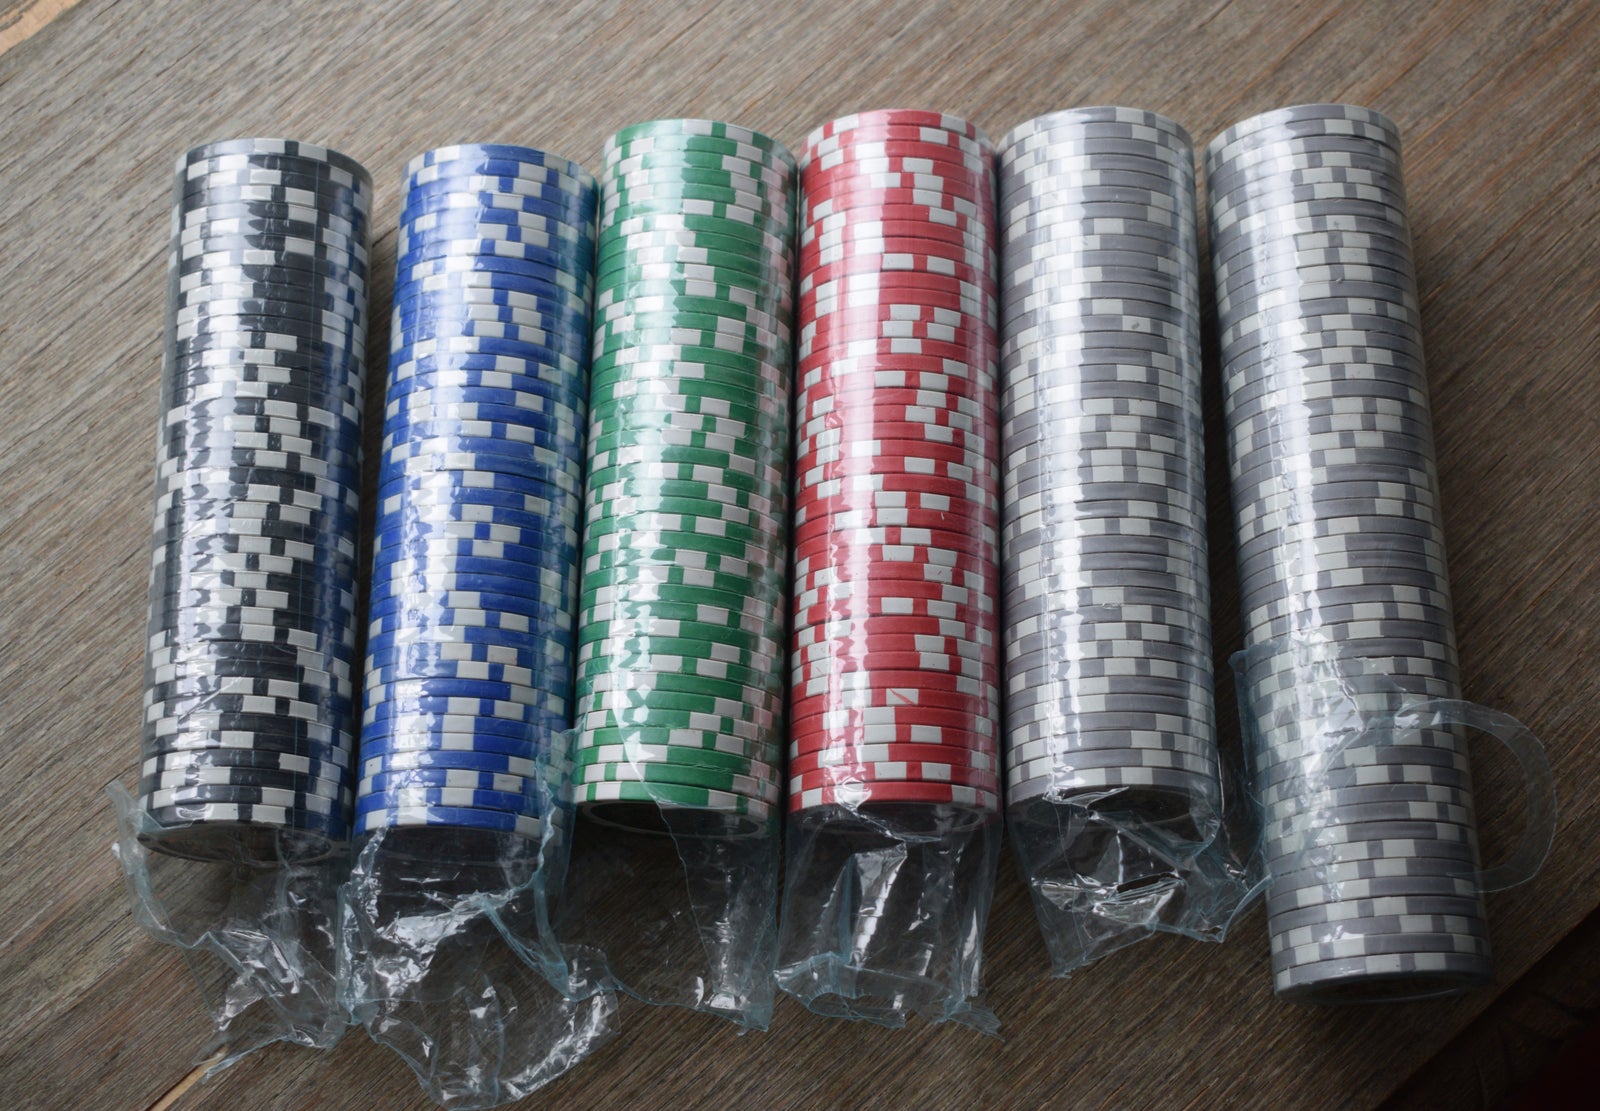 The Ultimate Poker Chip, hologram version, 250 stk